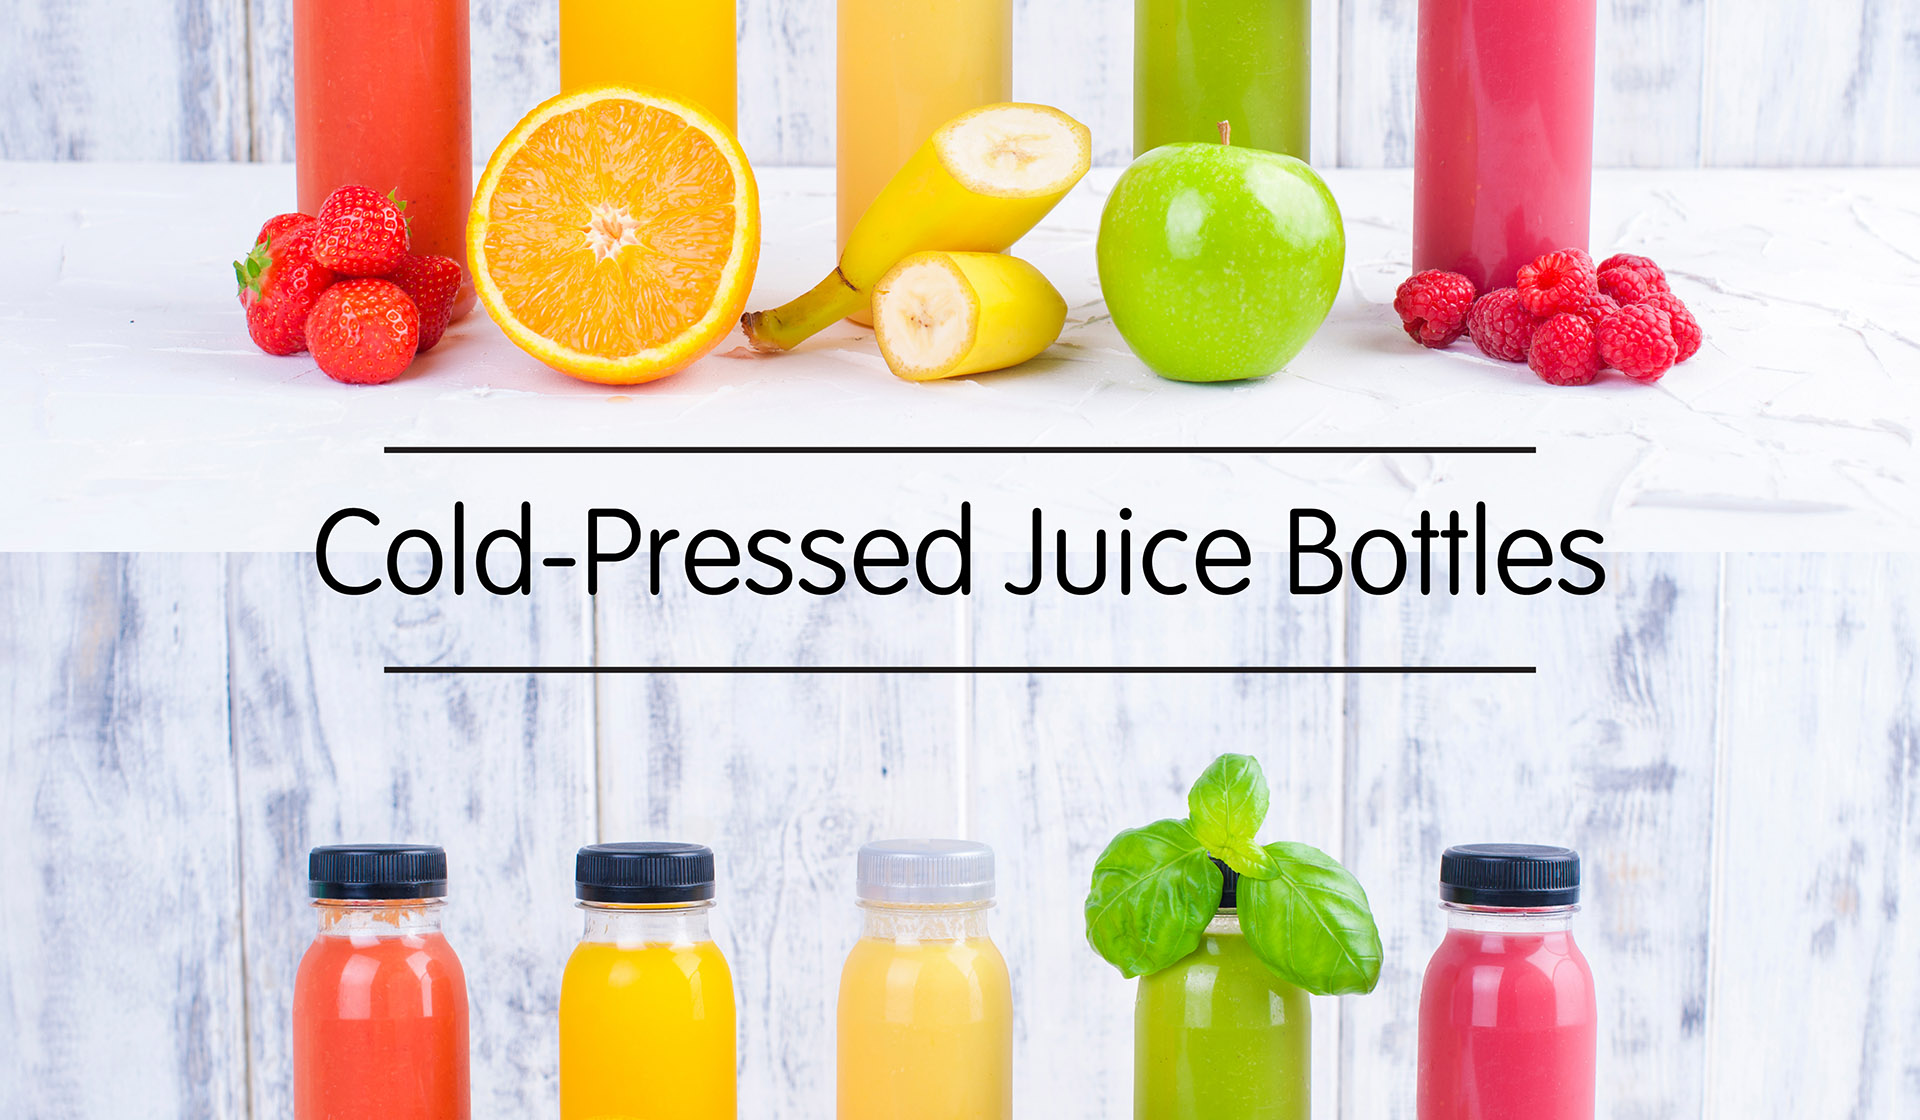 Cold-Pressed Juice Bottles